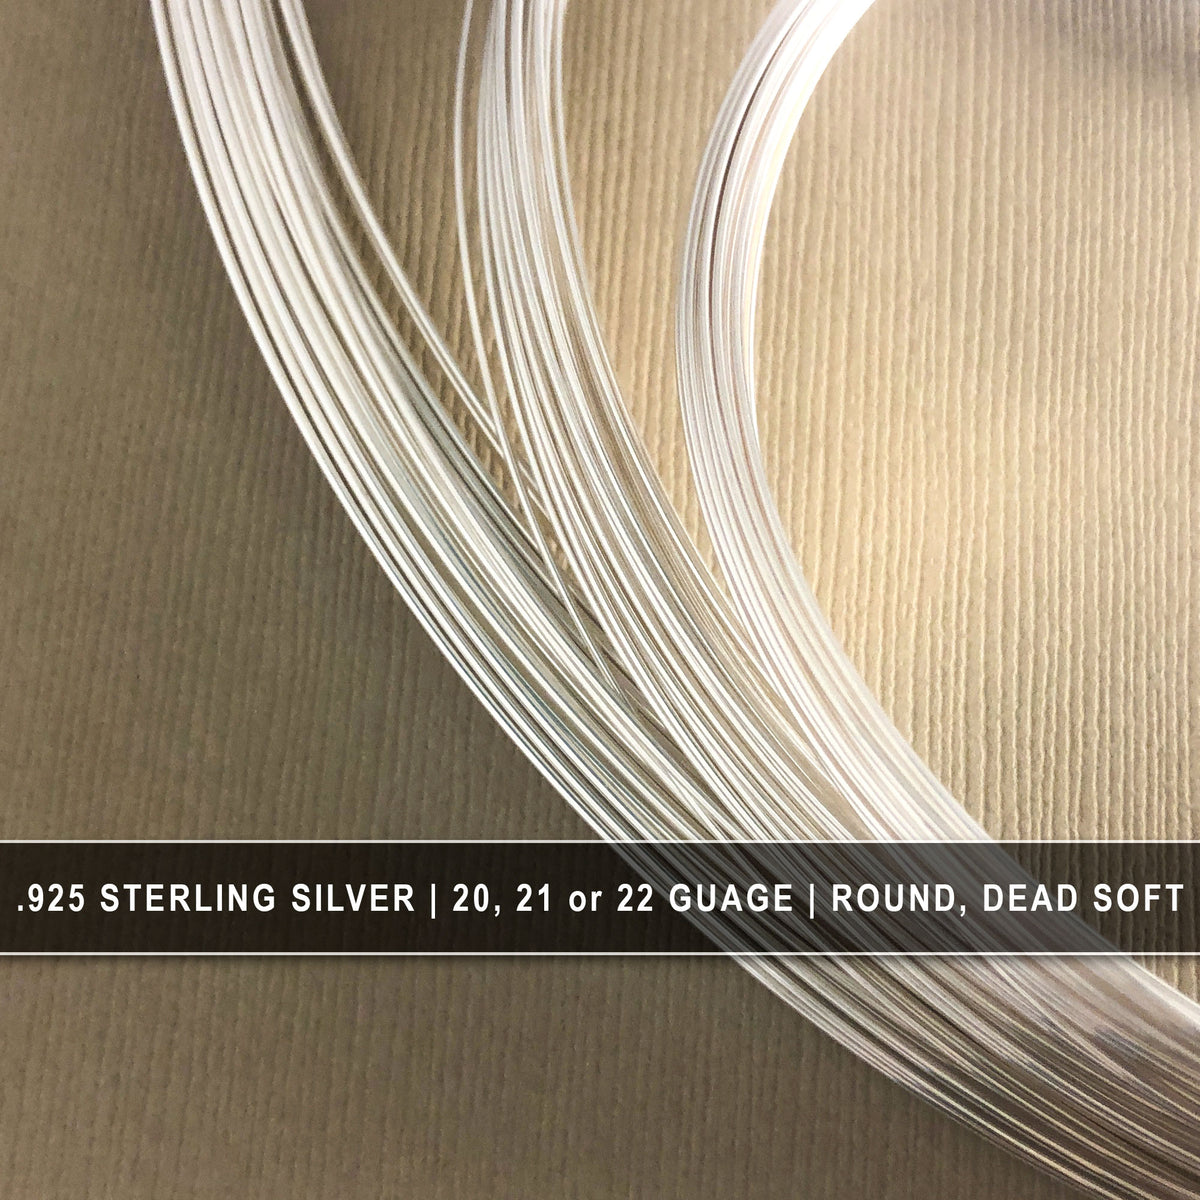 2 Gauge Half Round Dead Soft .925 Sterling Silver Wire: Wire